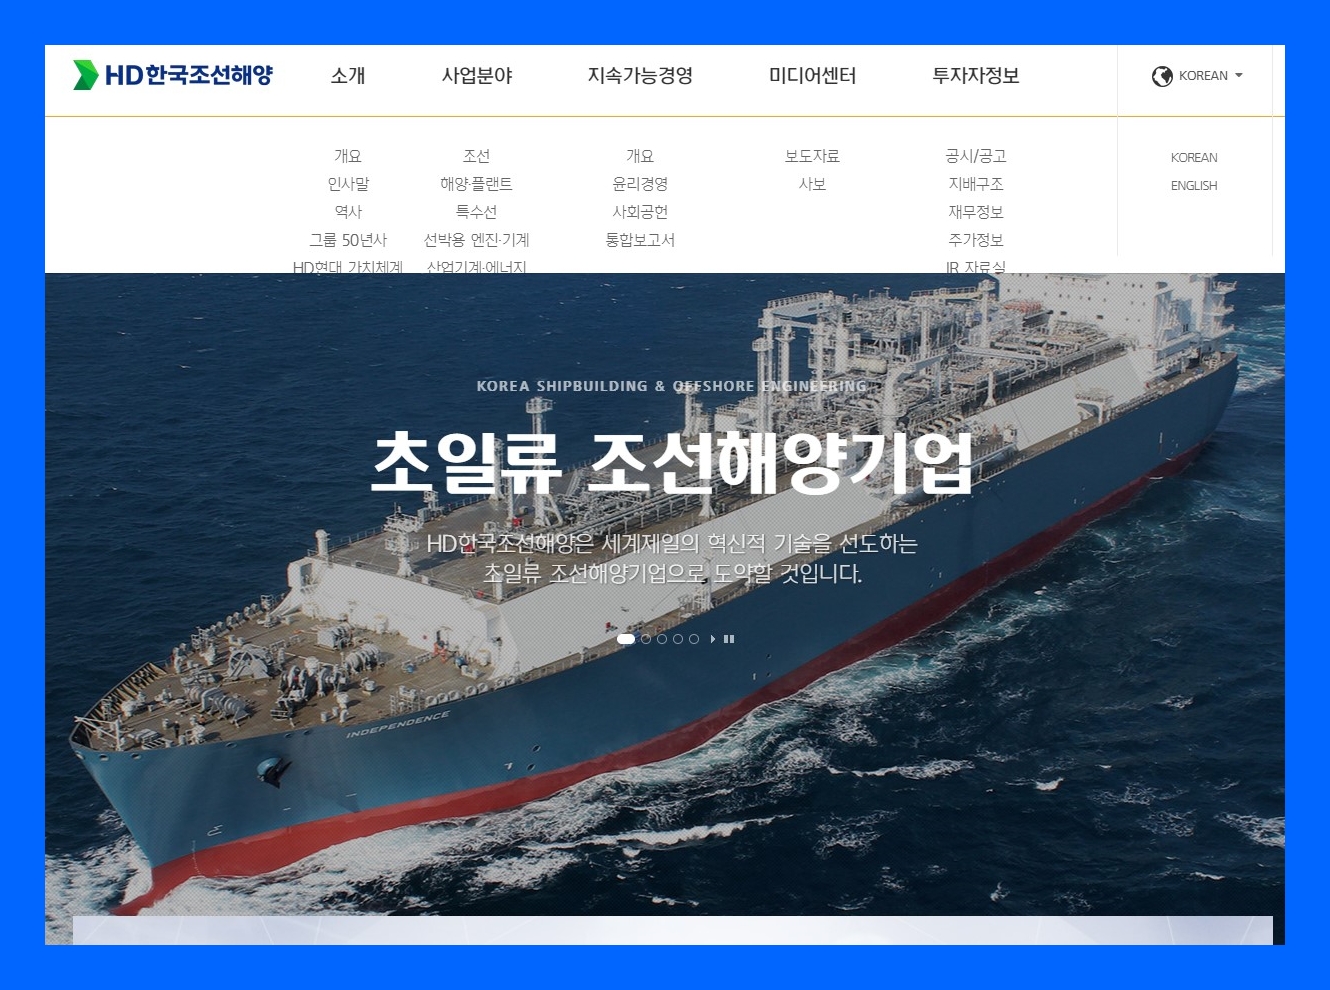 HD한국조선해양 (009540) 주식 주가 거래소 공시 단일판매ㆍ공급계약체결(자회사의 주요경영사항)